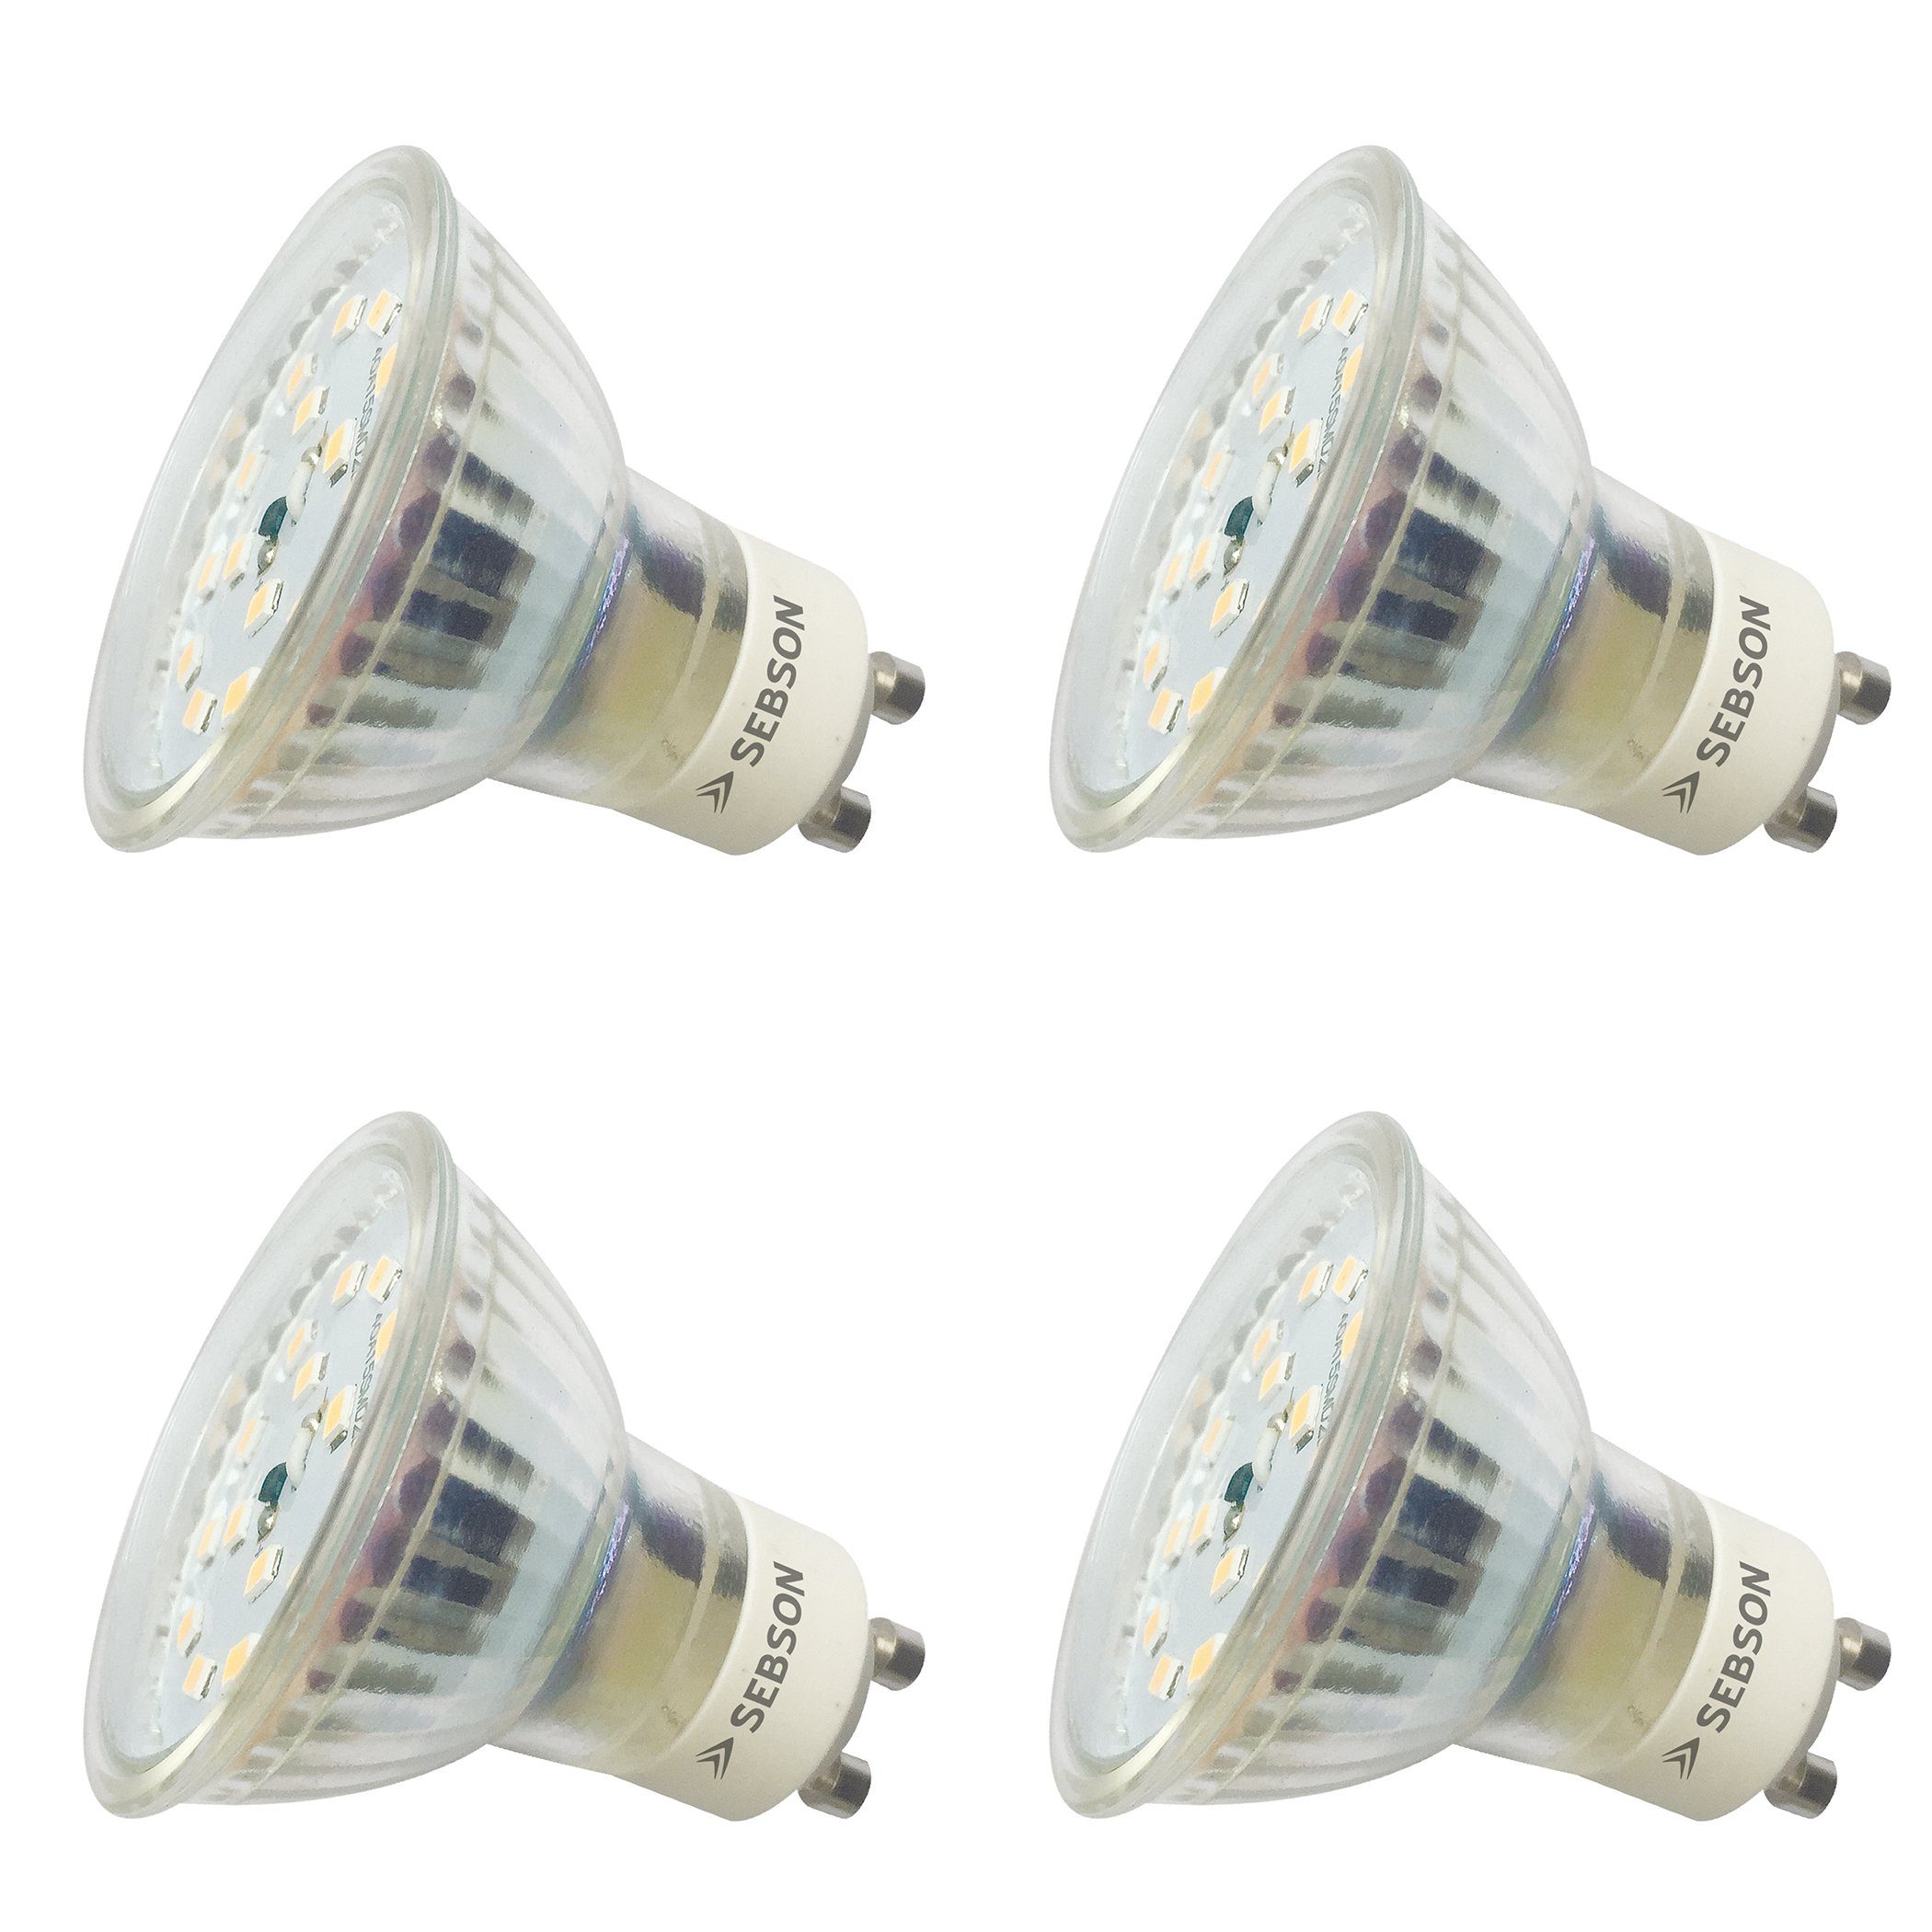 SEBSON LED-Leuchtmittel GU10 LED Lampe 5W dimmbar 350lm 3000K 230V Leuchtmittel - 4er Pack